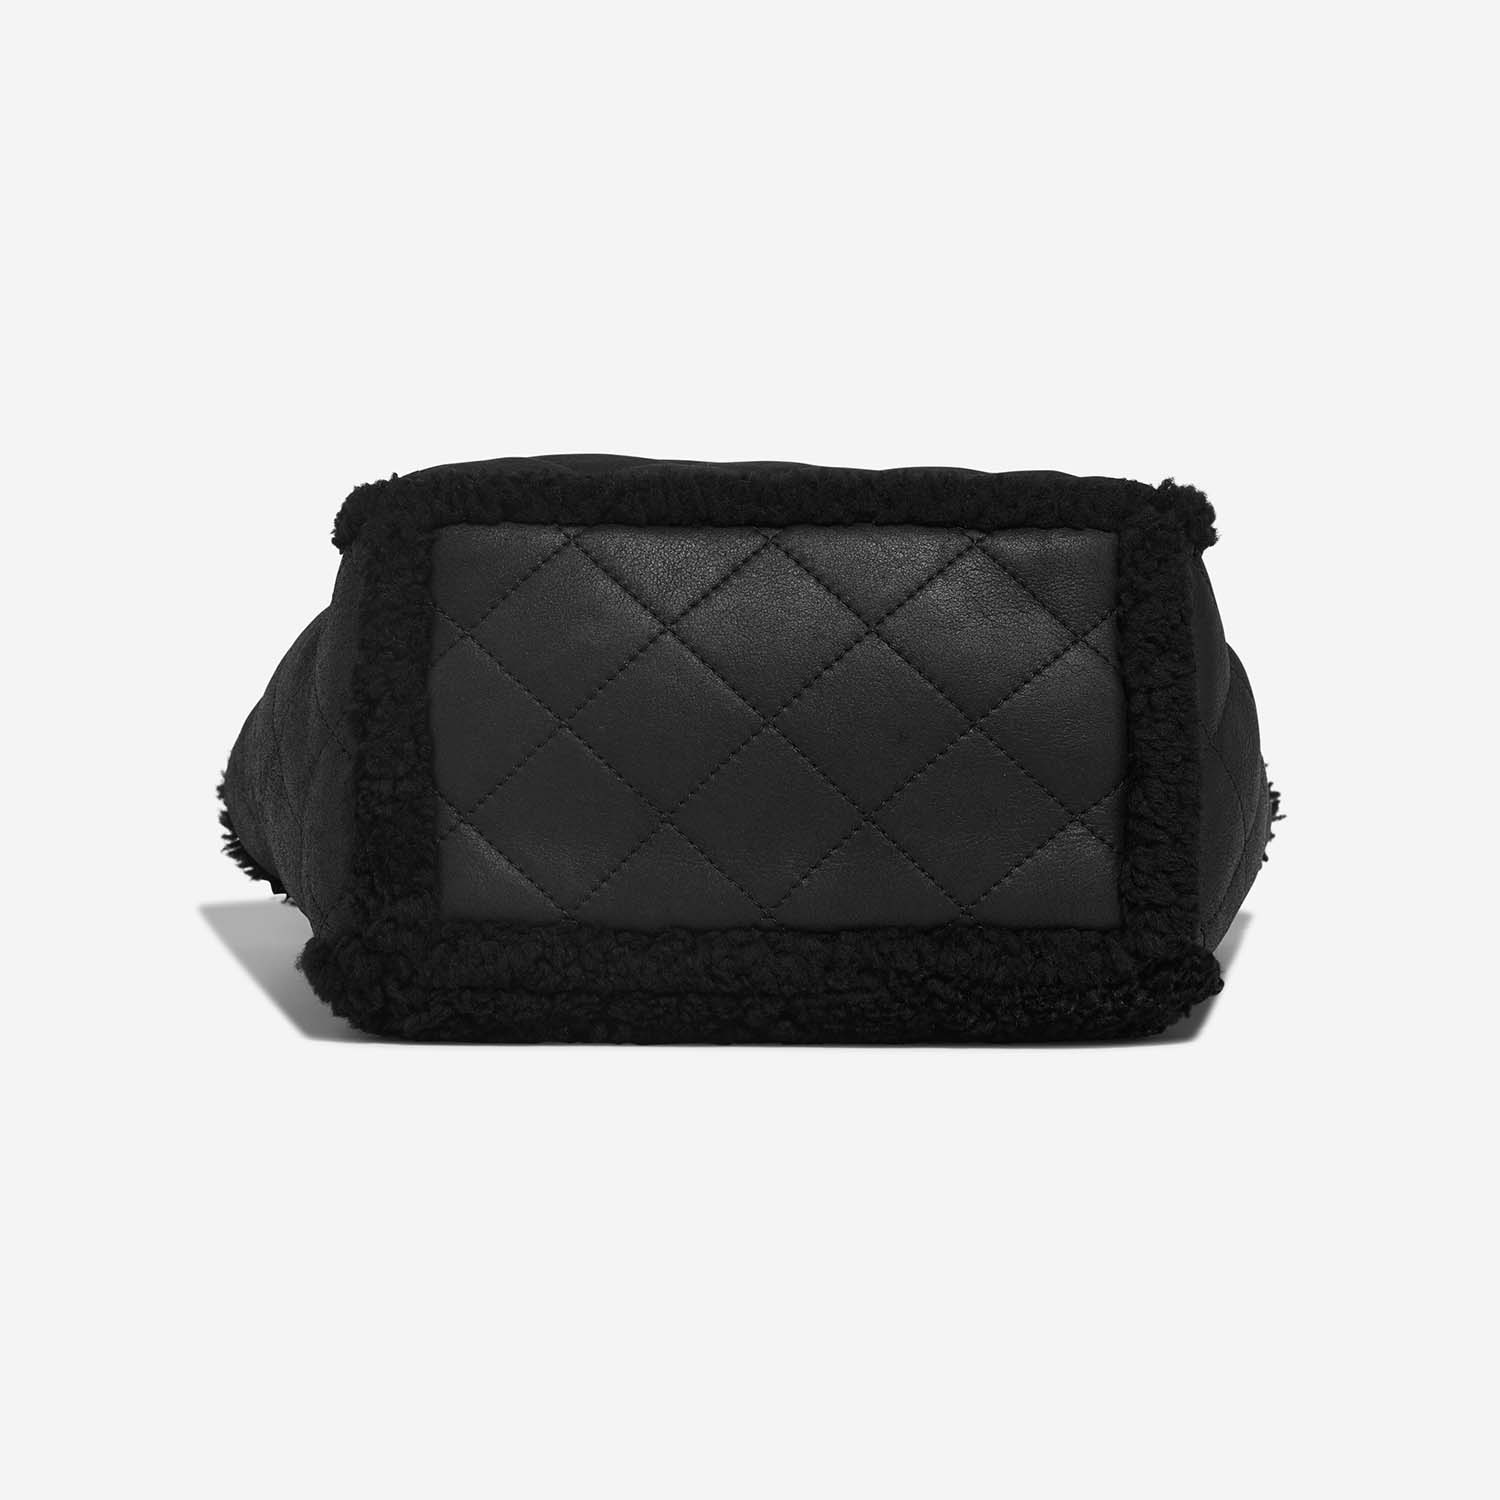 Chanel Coco Neige Shearling Bag - Black Totes, Handbags - CHA760590